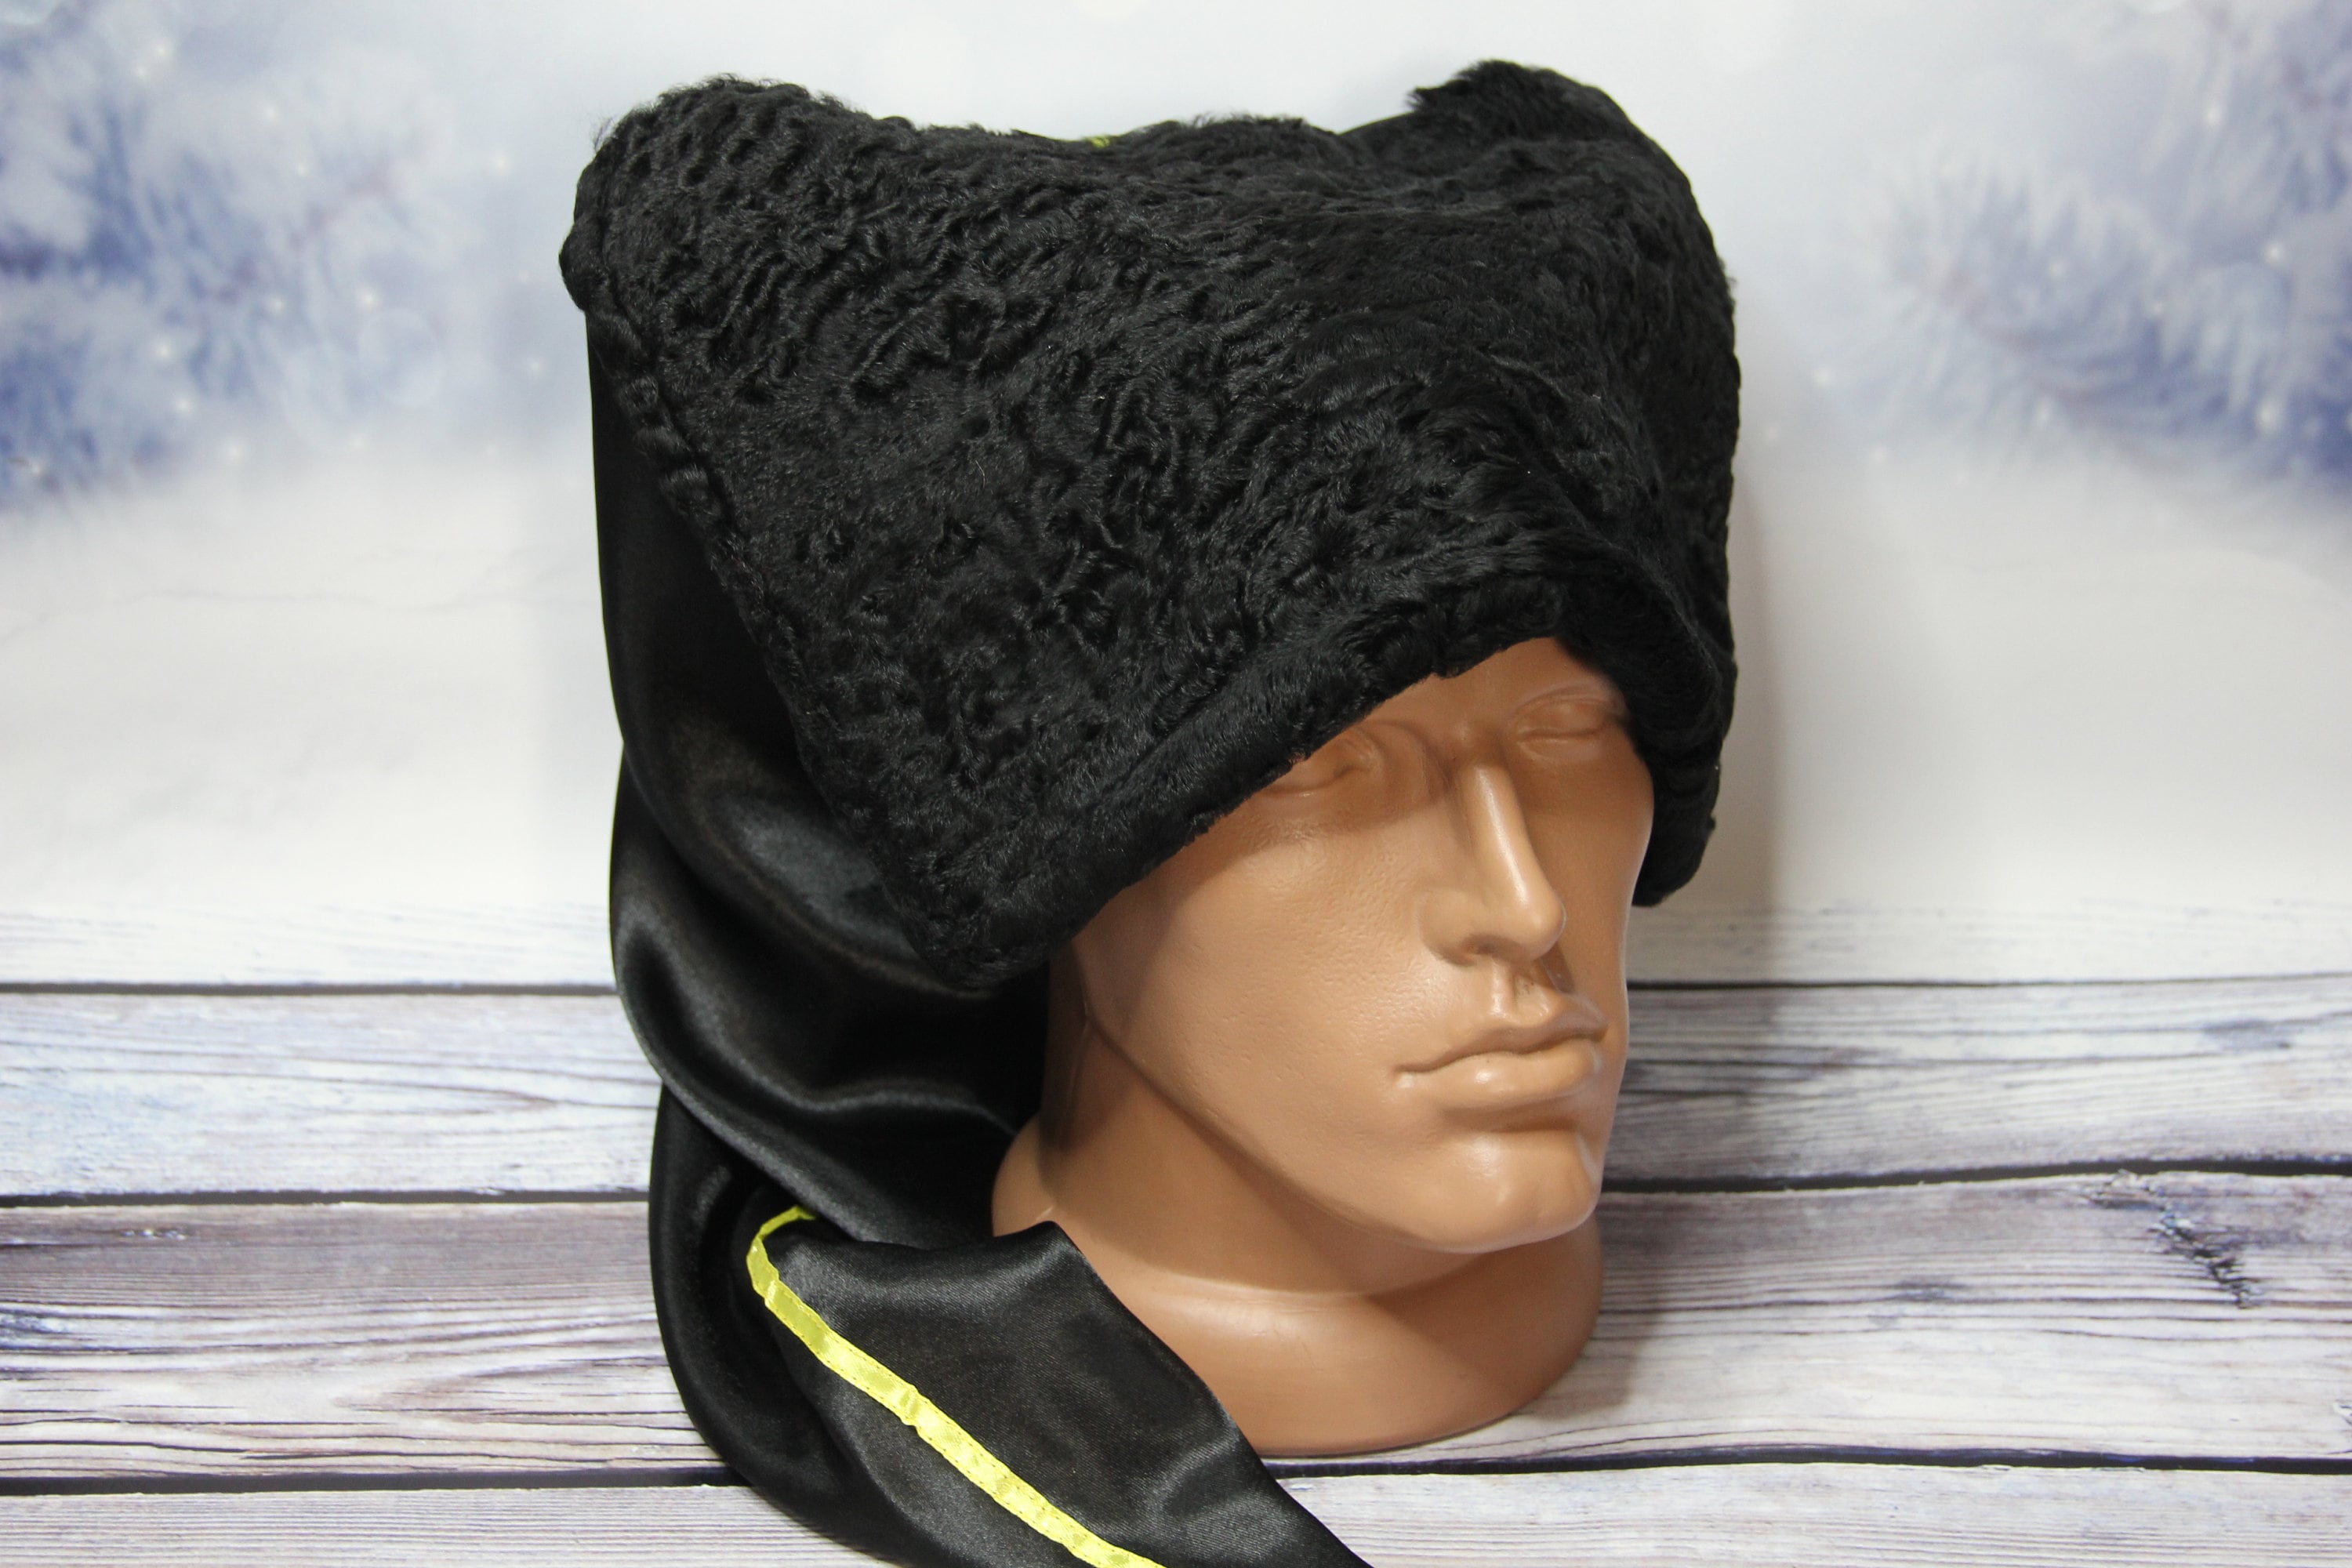 Lifup Damen Kunstpelz Hut Cossack Russische Mütze Kosakenmütze mit Schwanz  Beige Mittel : : Fashion